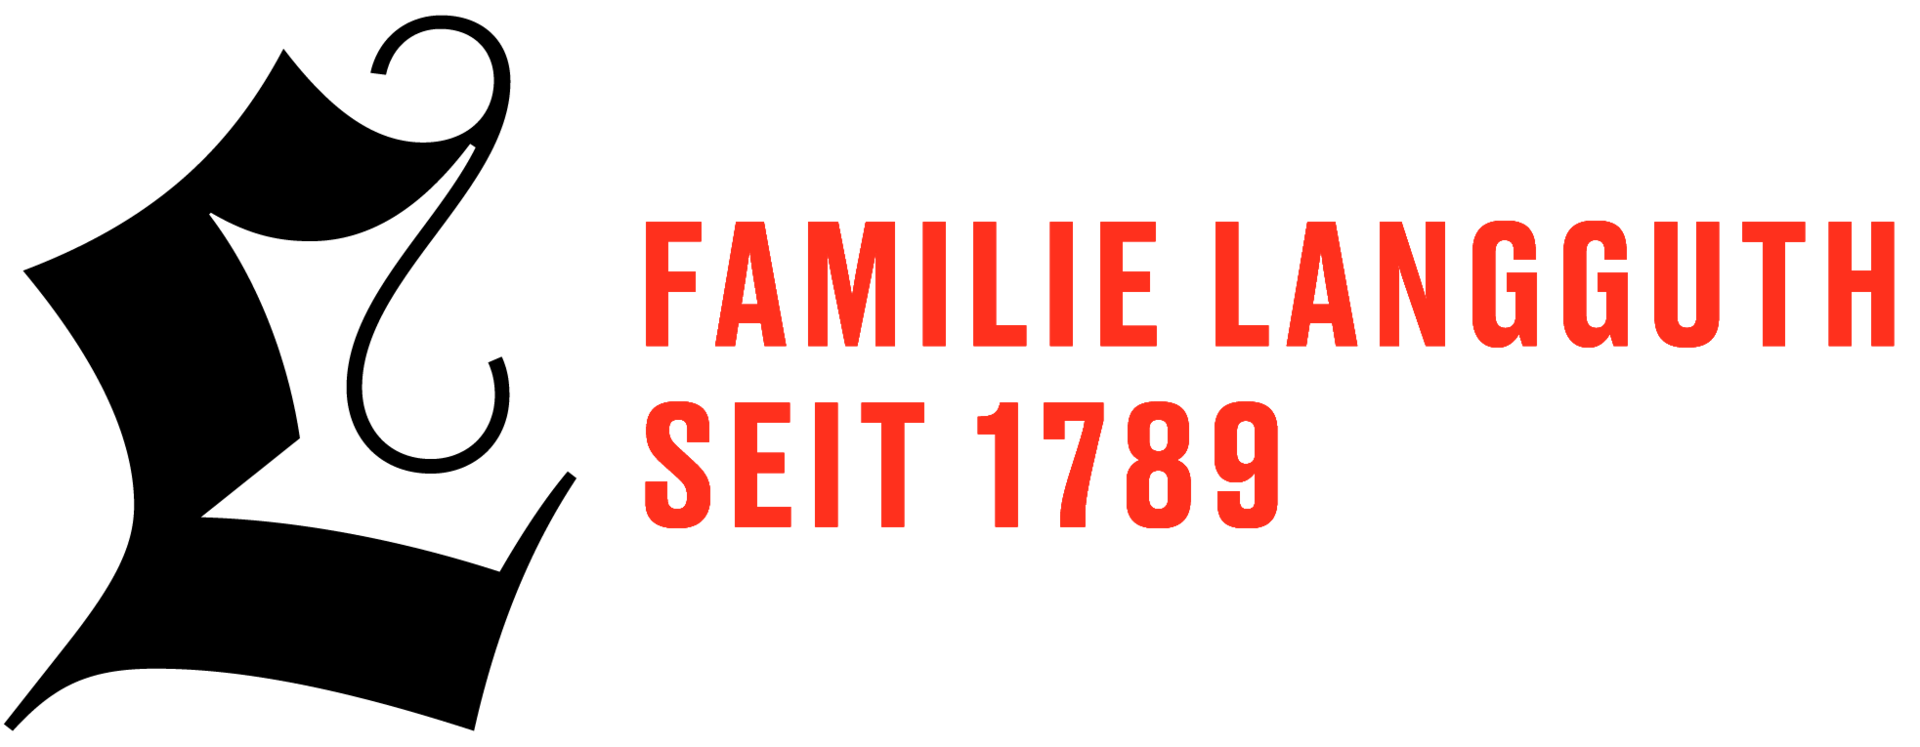 Logo Familie Franz Wilhelm Langguth